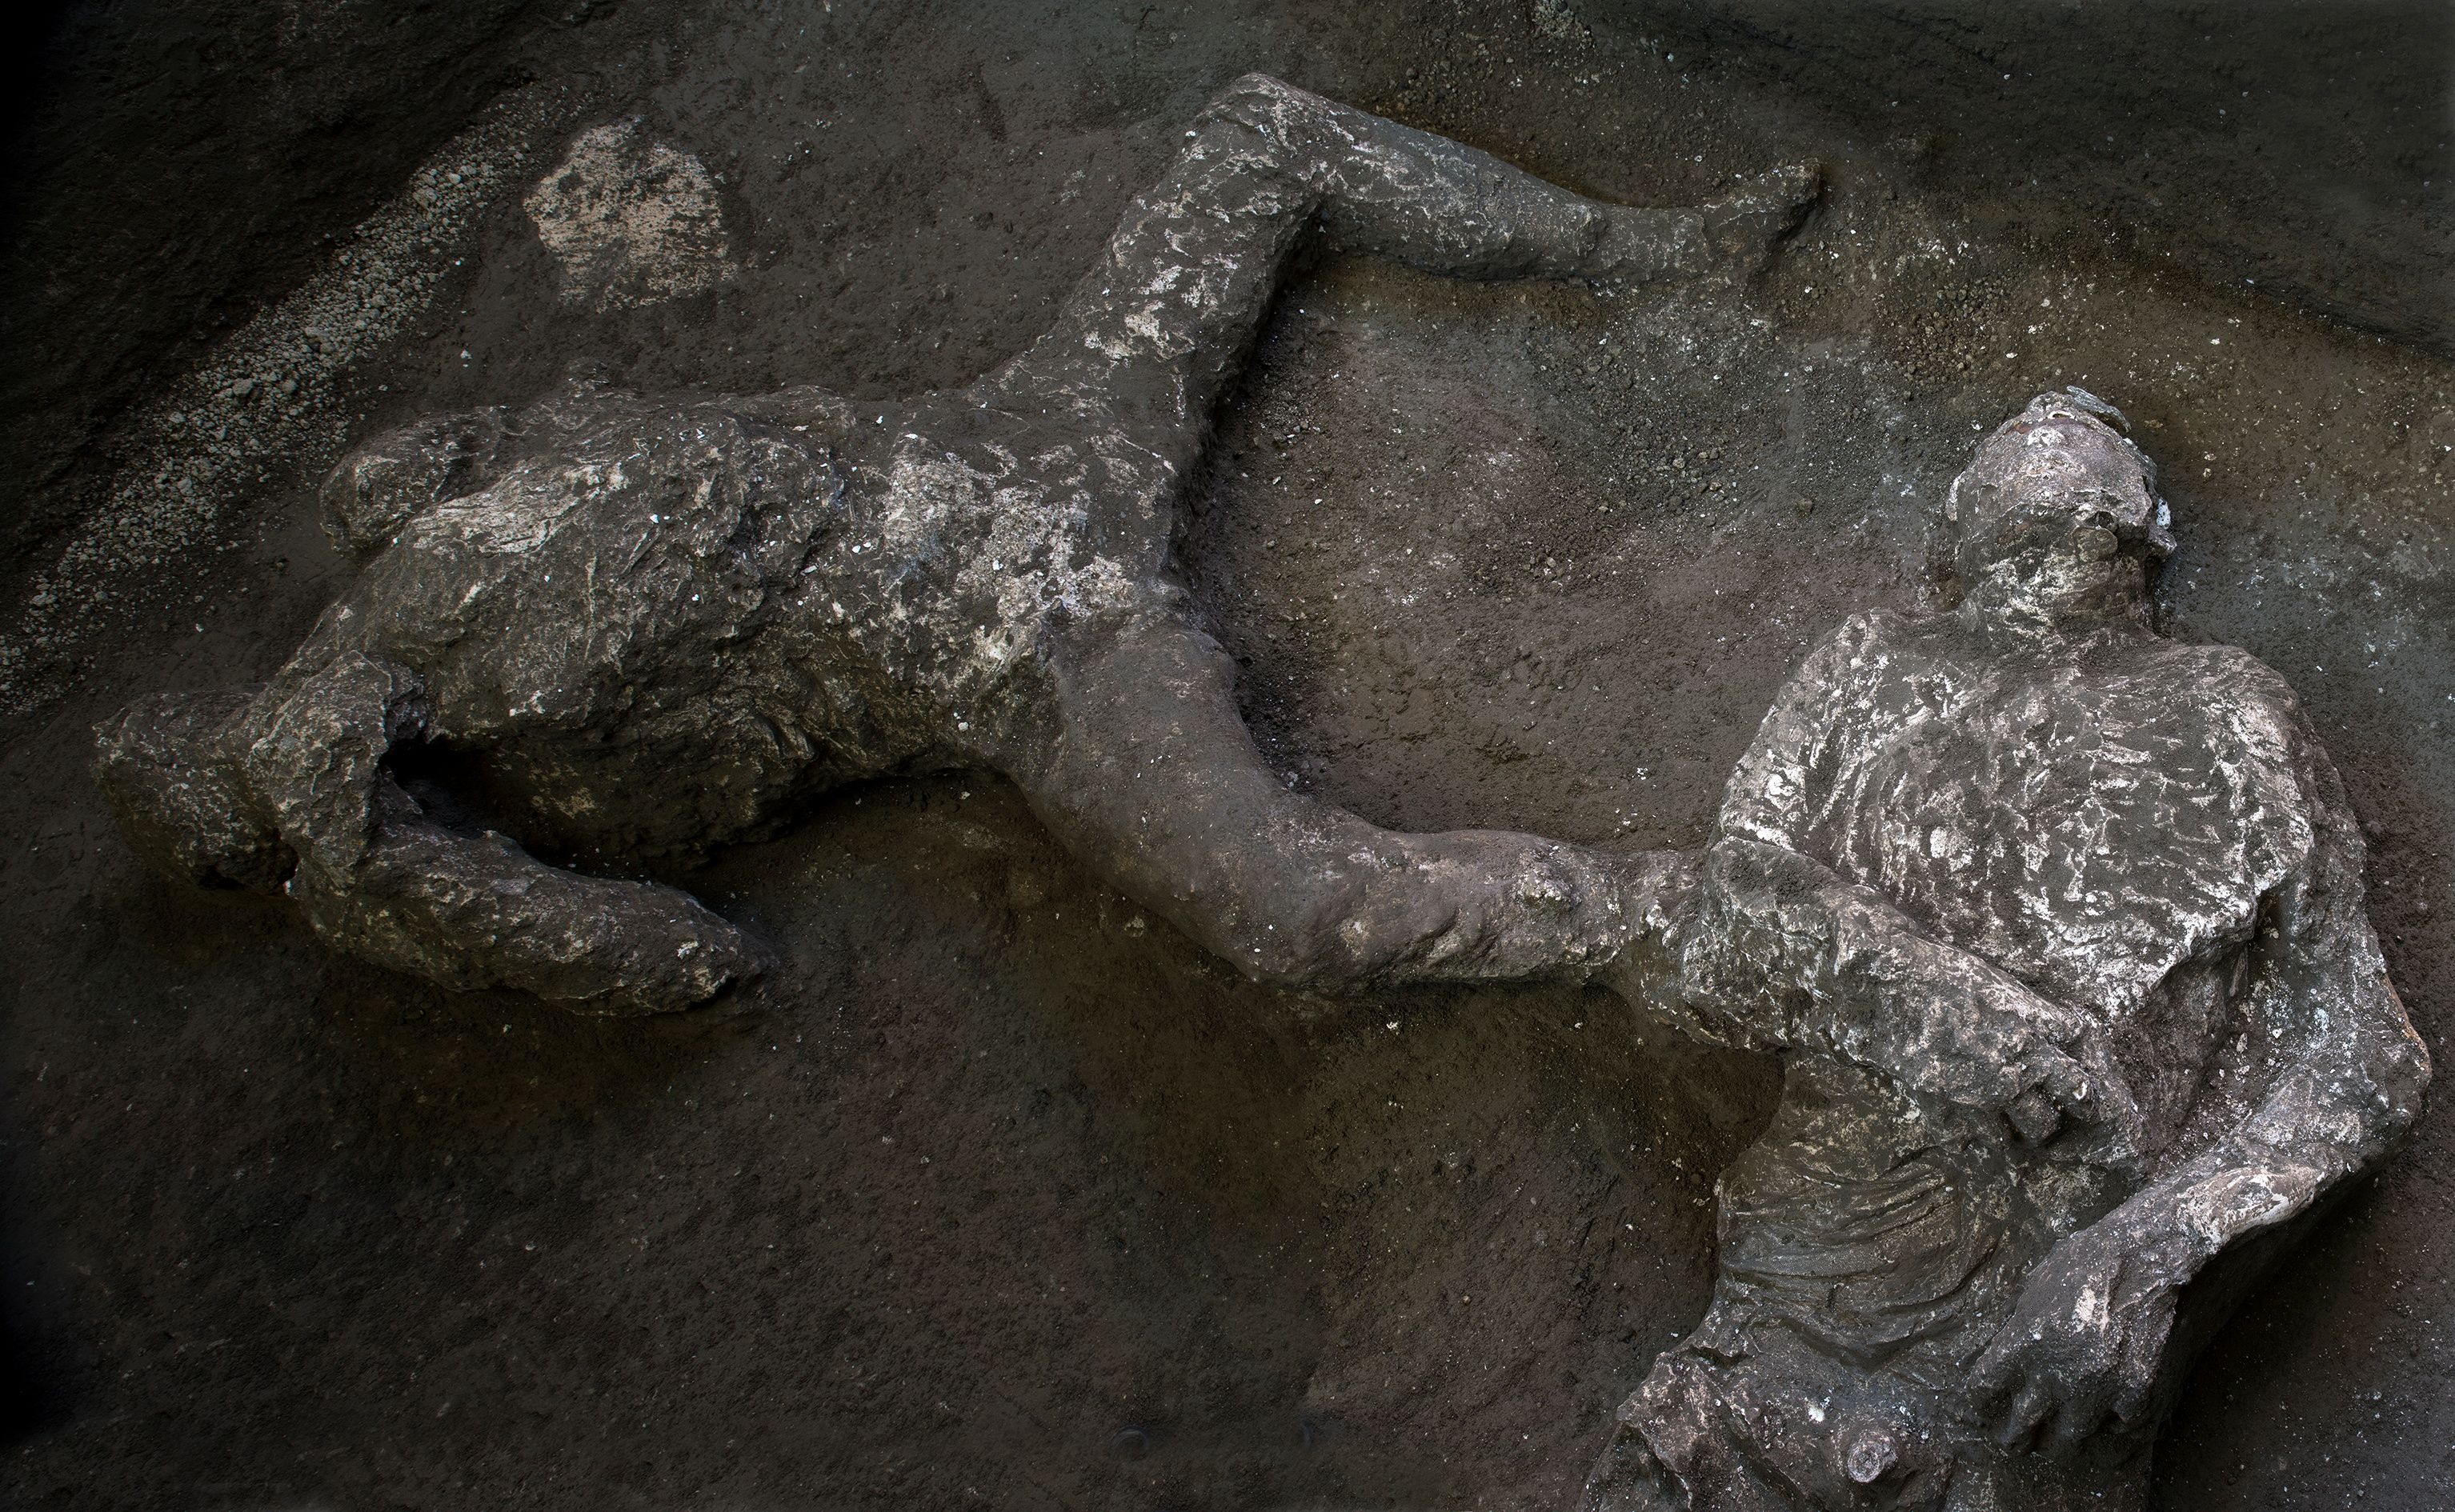 Ambos esqueletos fueron encontrados en una habitación lateral a lo largo de un pasillo subterráneo, conocido en la época romana antigua como criptoporticus, que conducía al nivel superior de la villa (Luigi Spina/Handout via REUTERS)